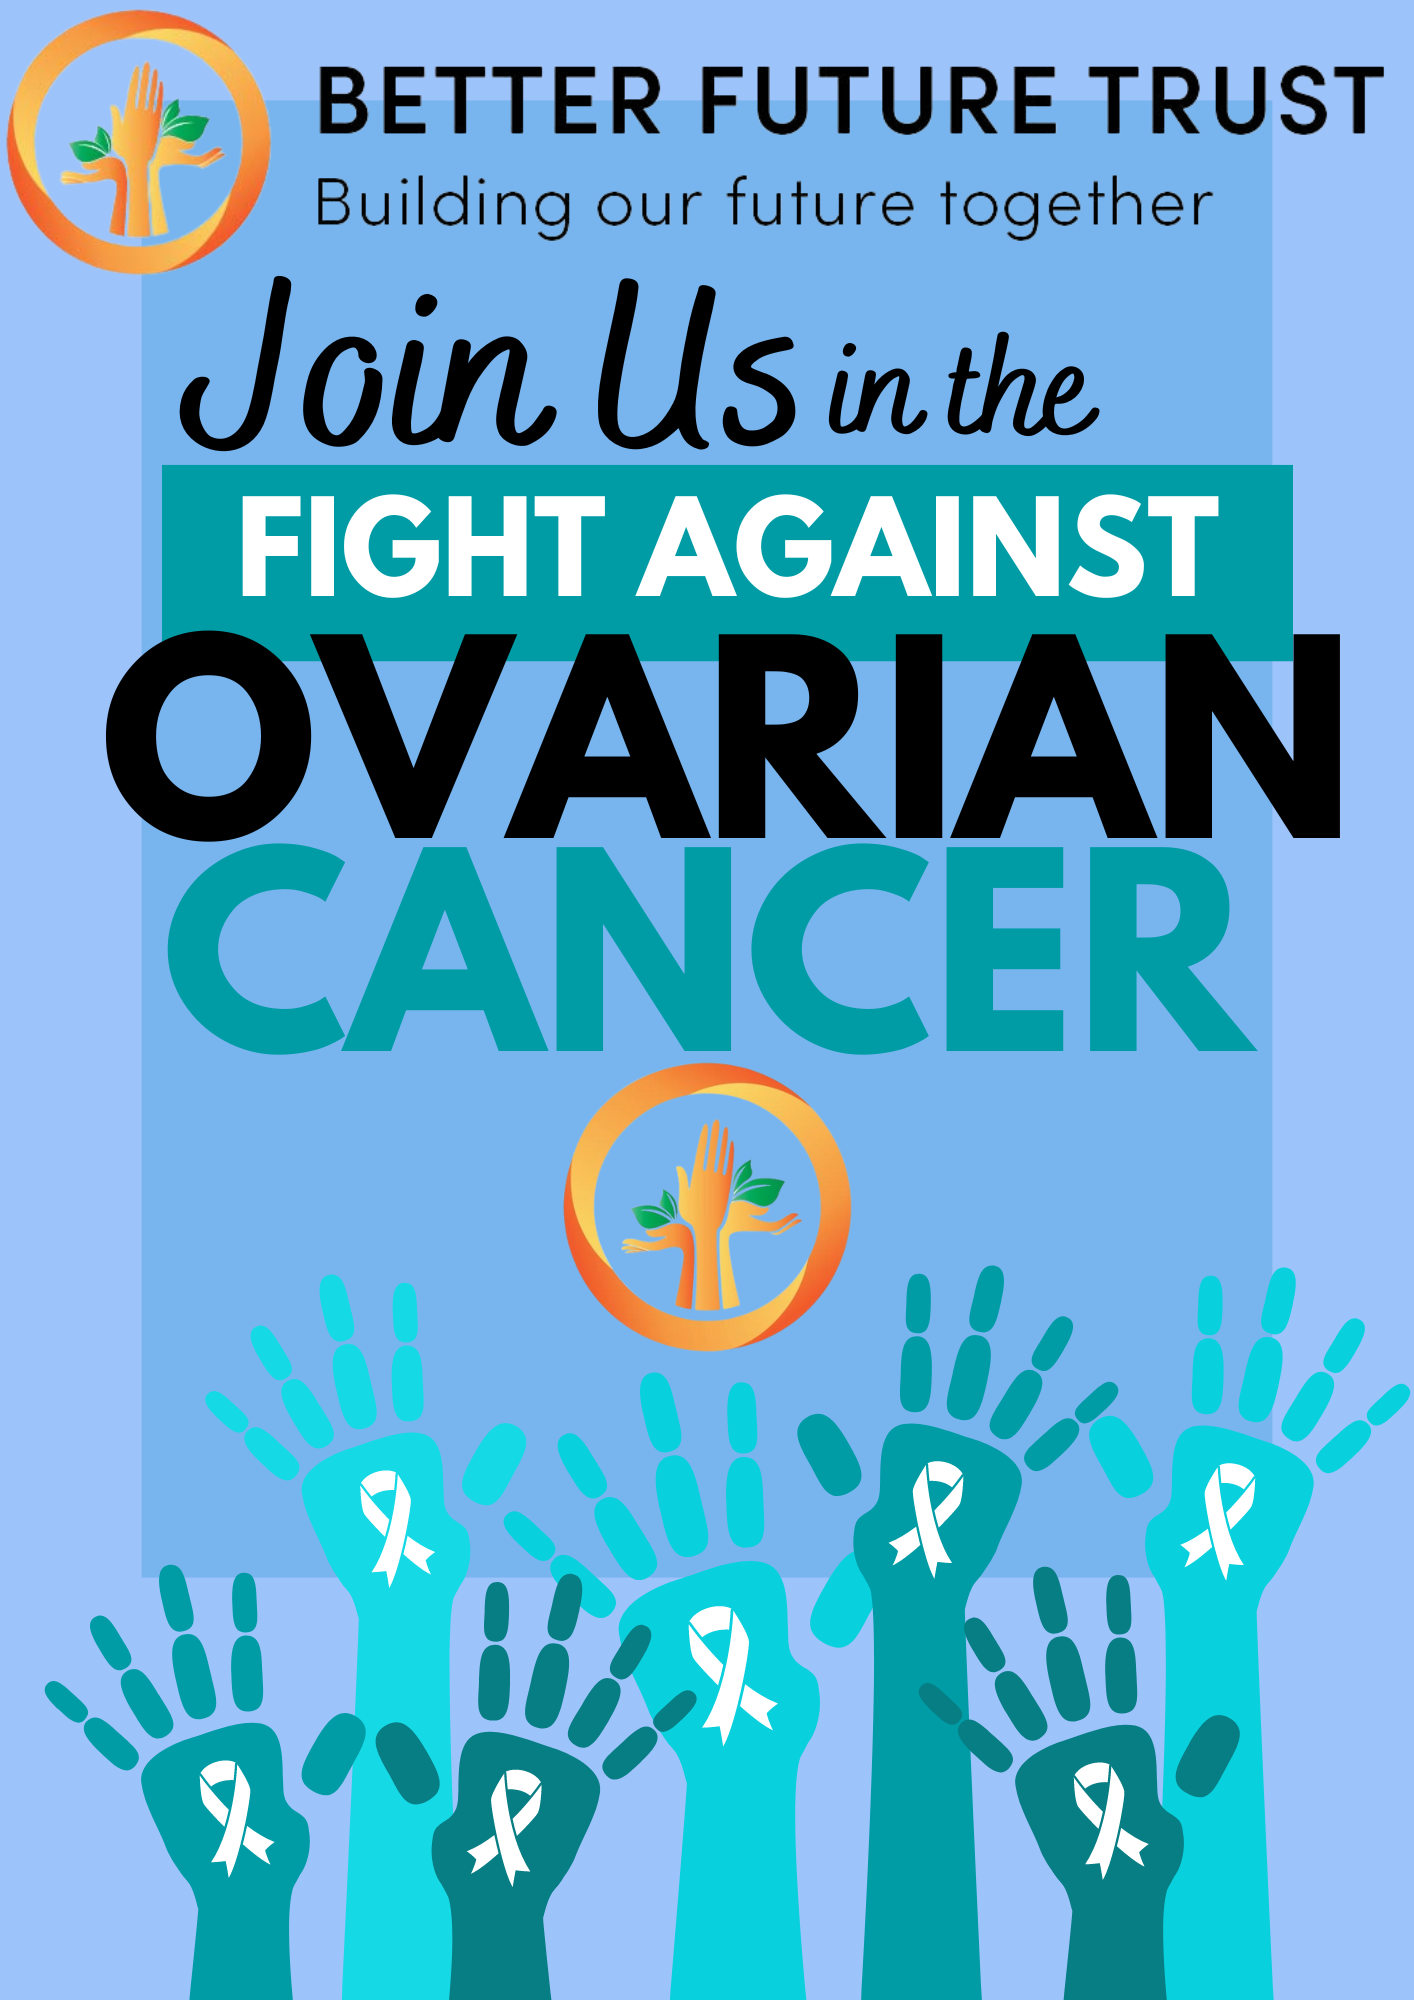 Raising Awareness: Better Future Trust’s Ovarian Cancer Awareness Event